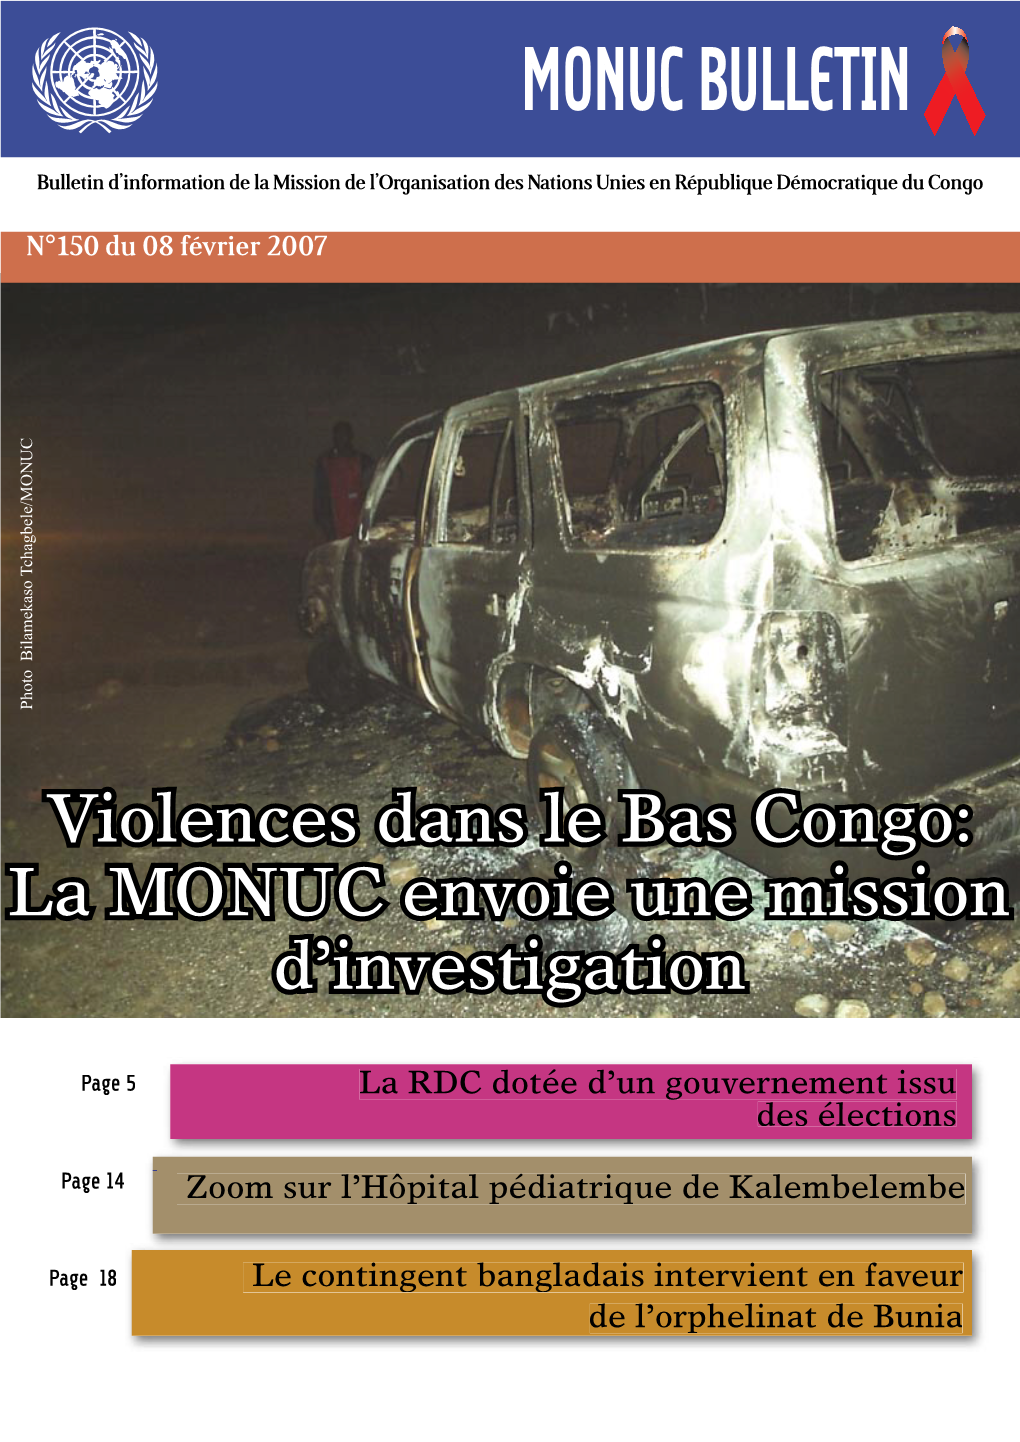 Violences Dans Le Bas Congo: La MONUC Envoie Une Mission D’Investigation